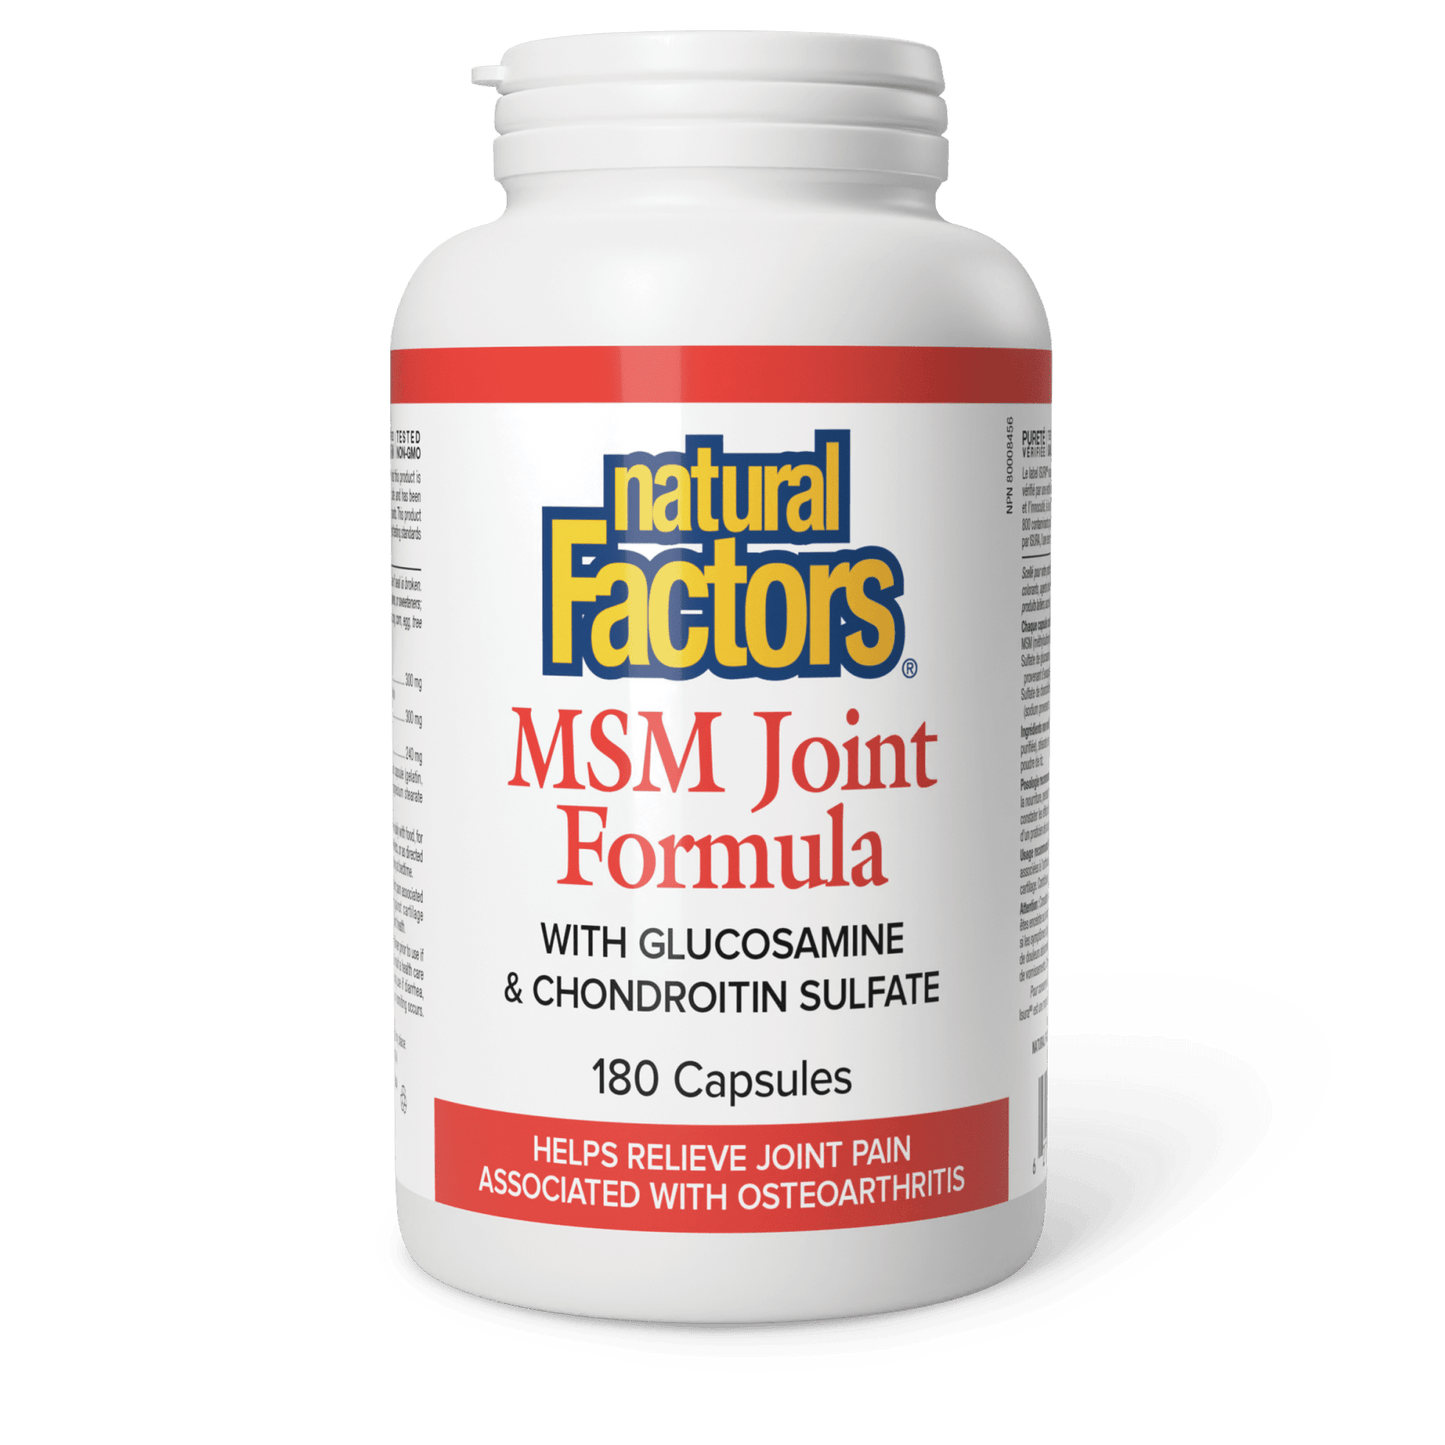 MSM Joint Formula, Natural Factors|v|image|2696